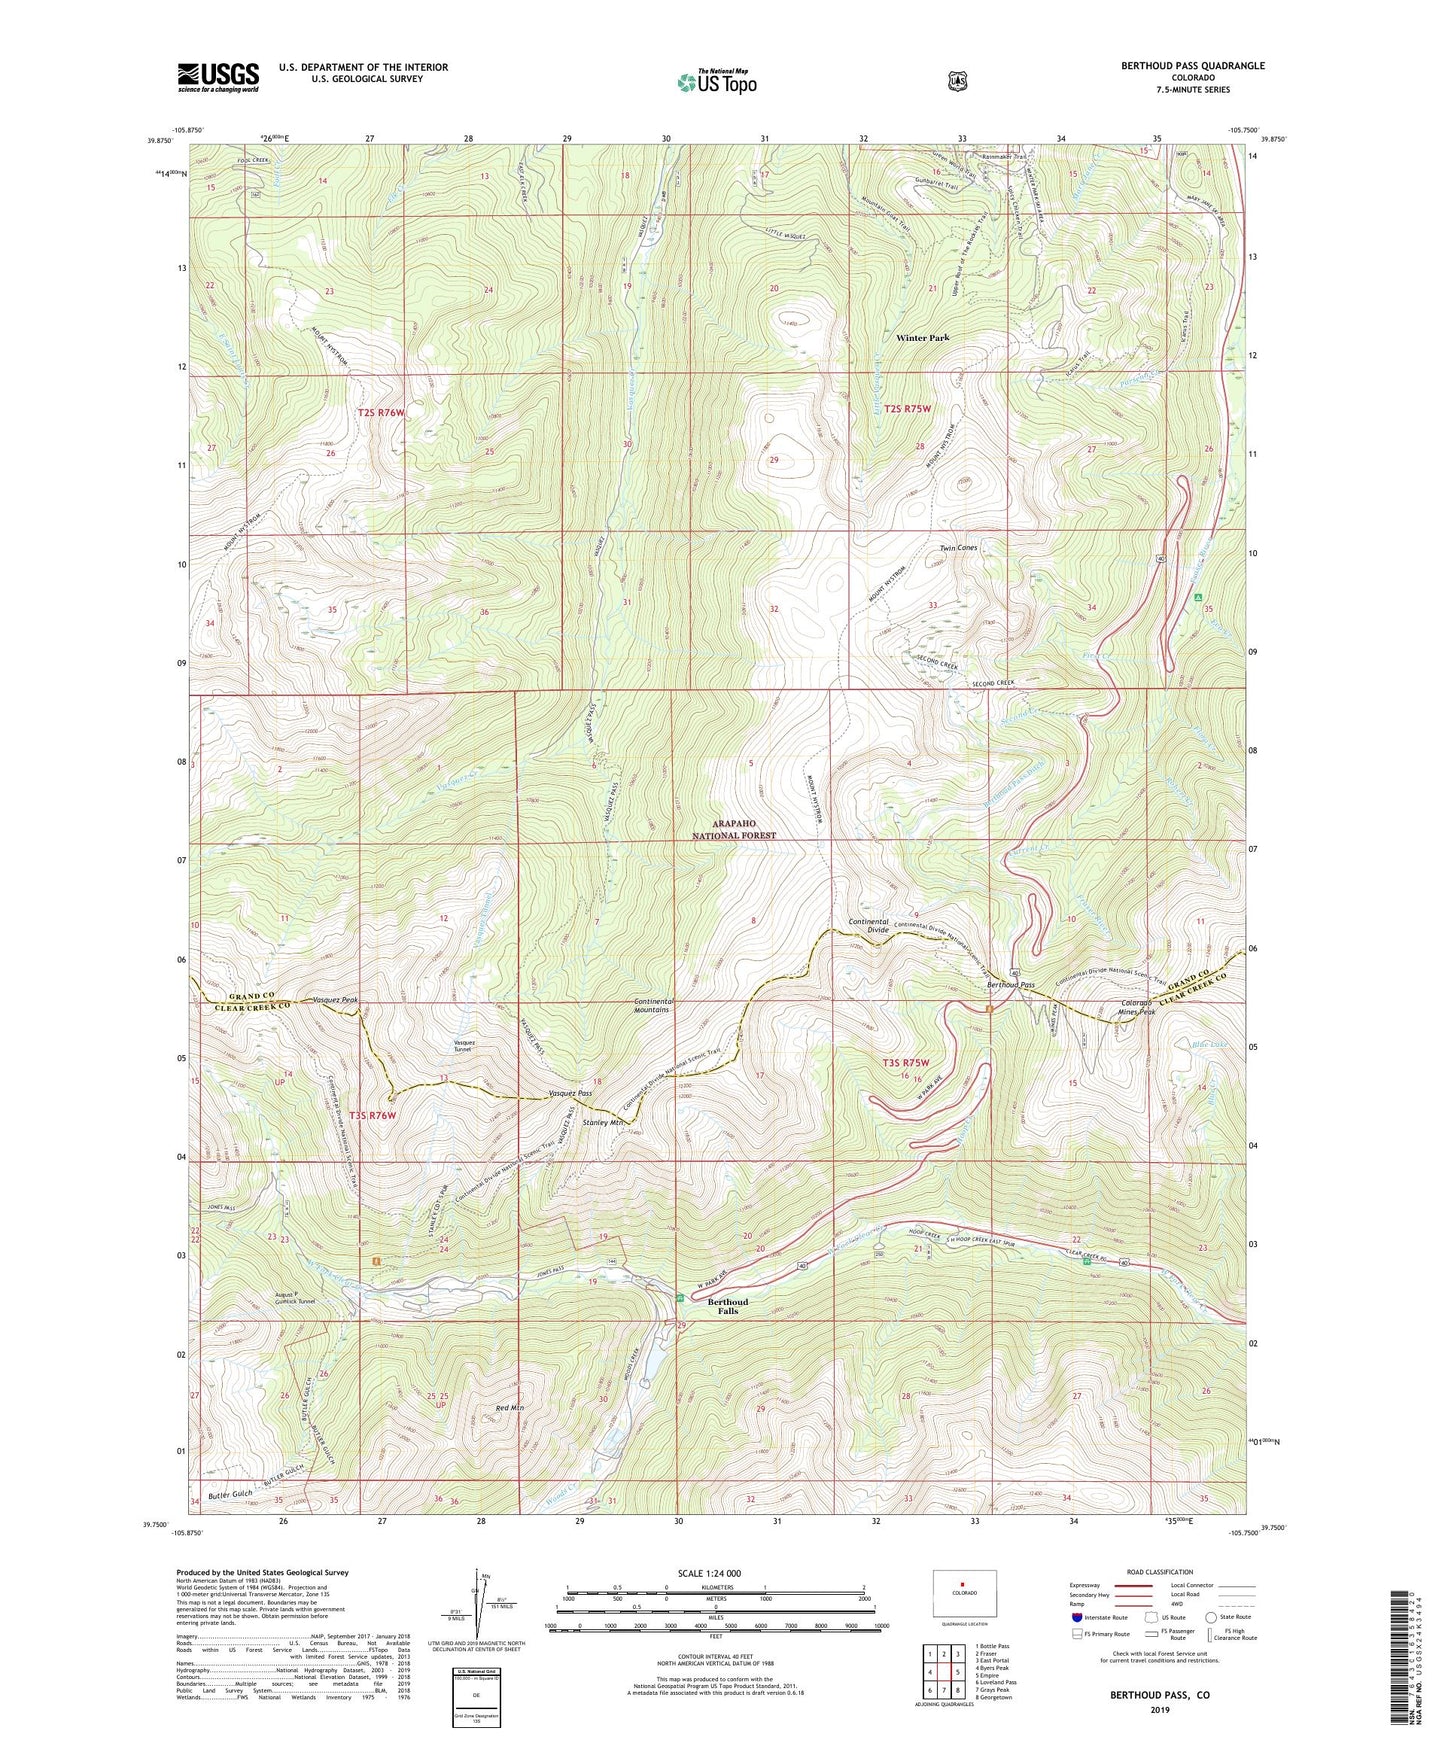 Berthoud Pass Colorado US Topo Map Image